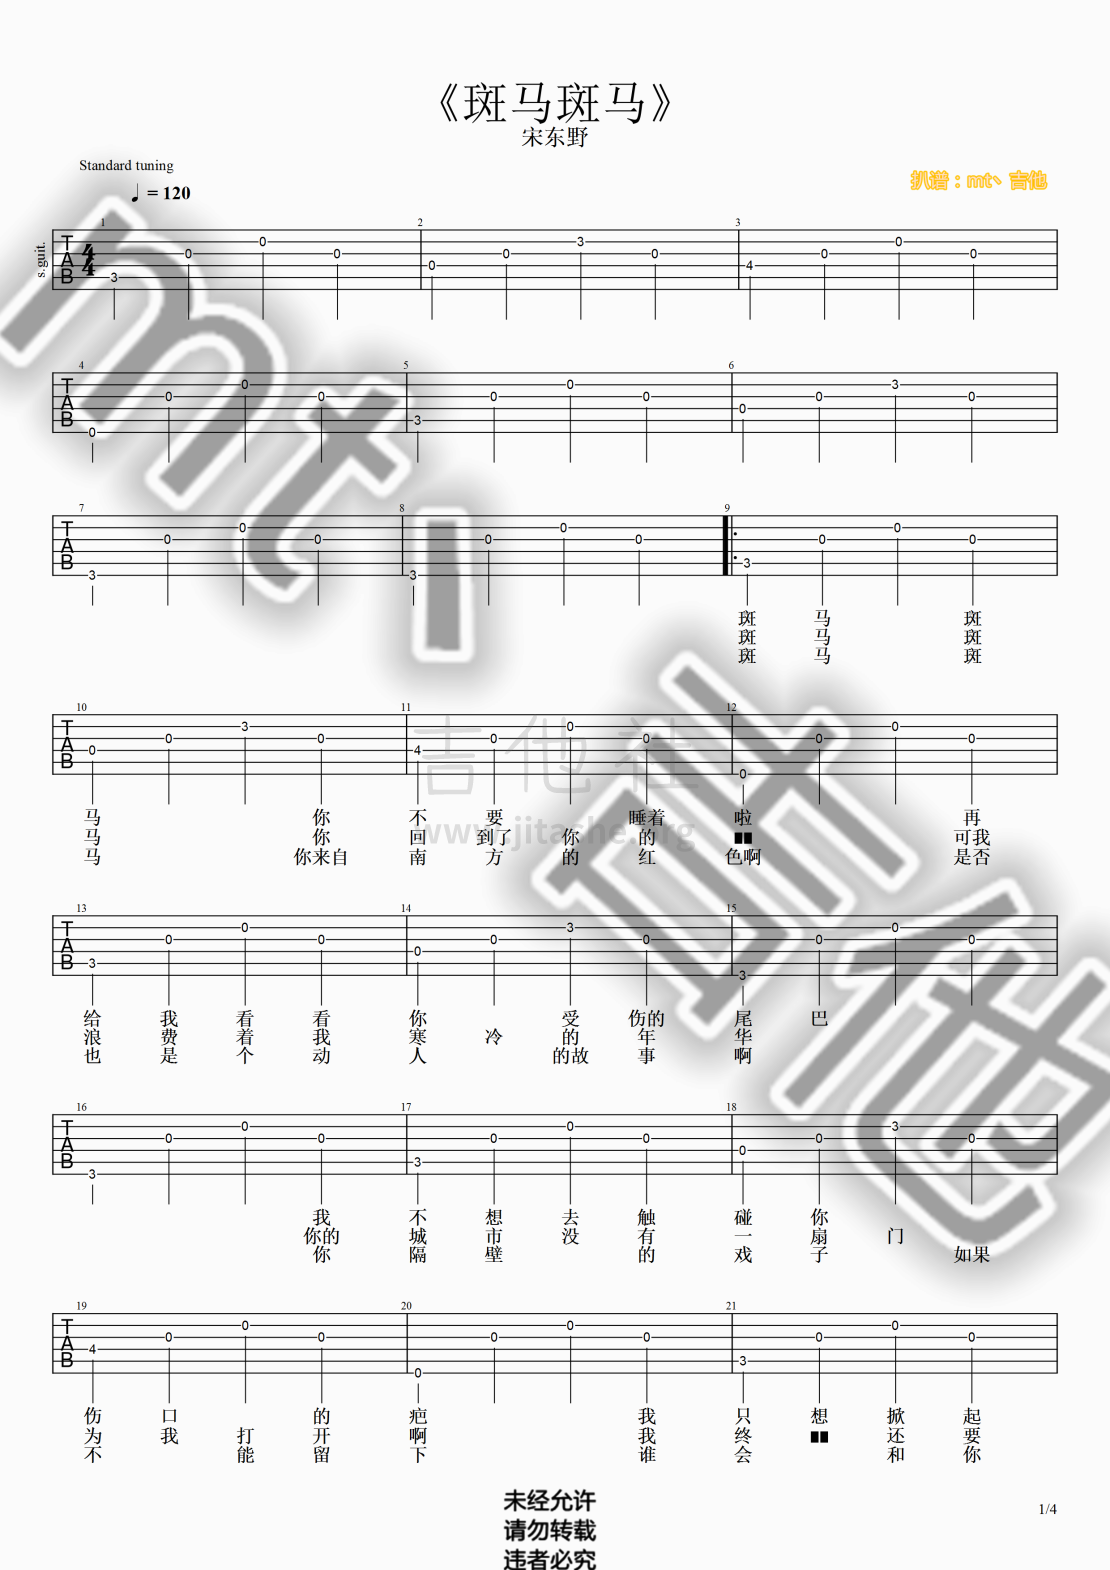 打印:斑马斑马（超级超级简单简单版！！！！）吉他谱_宋冬野_斑马斑马#1.png